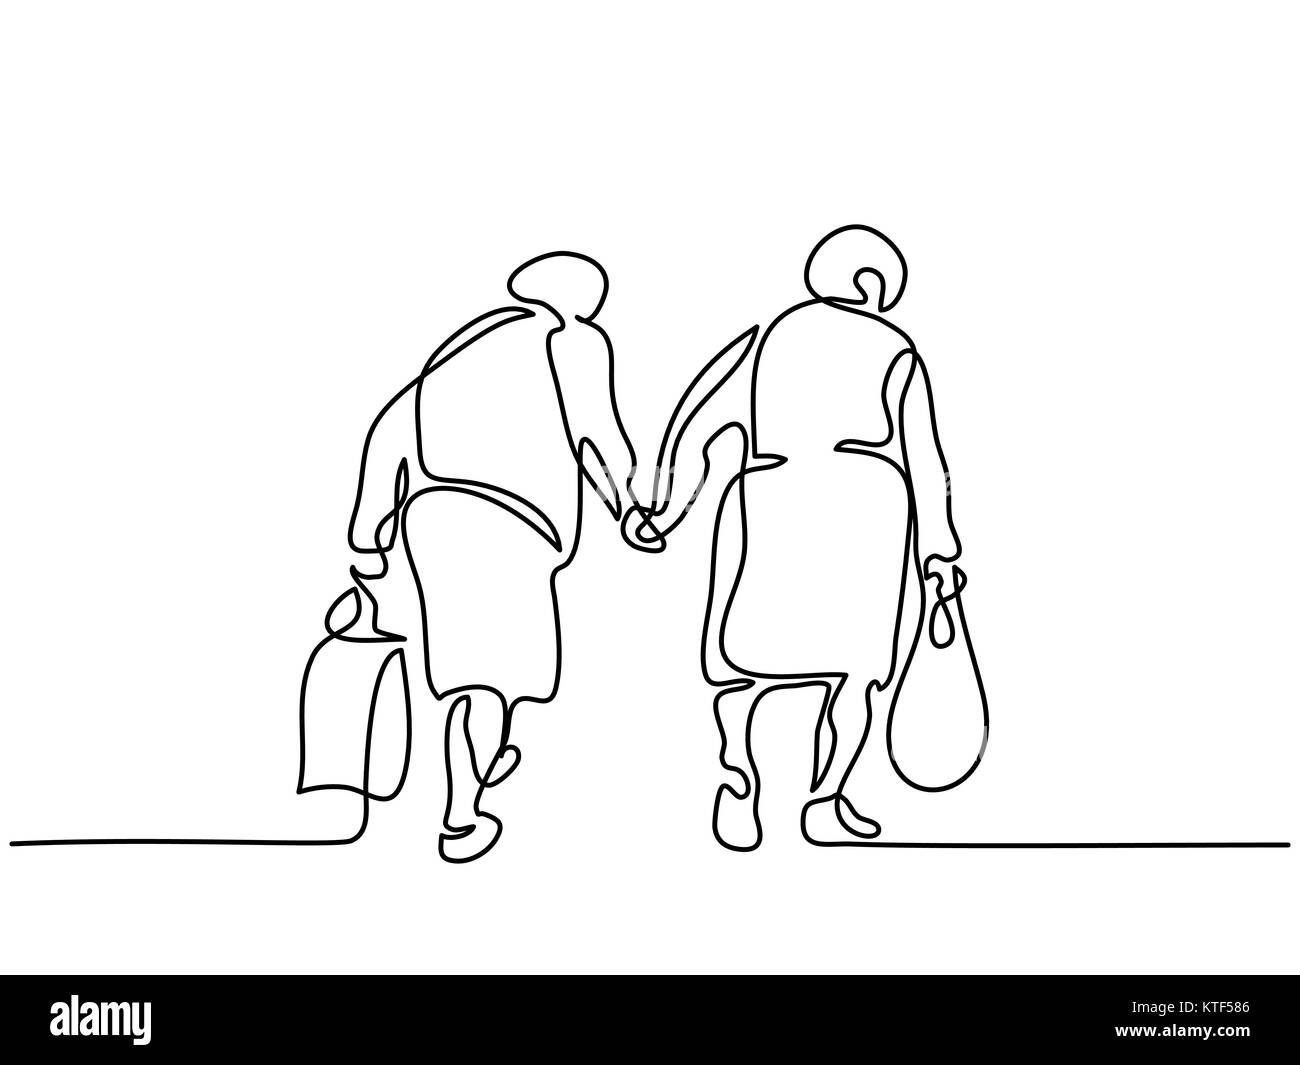 Elderly women friends walking Stock Vector